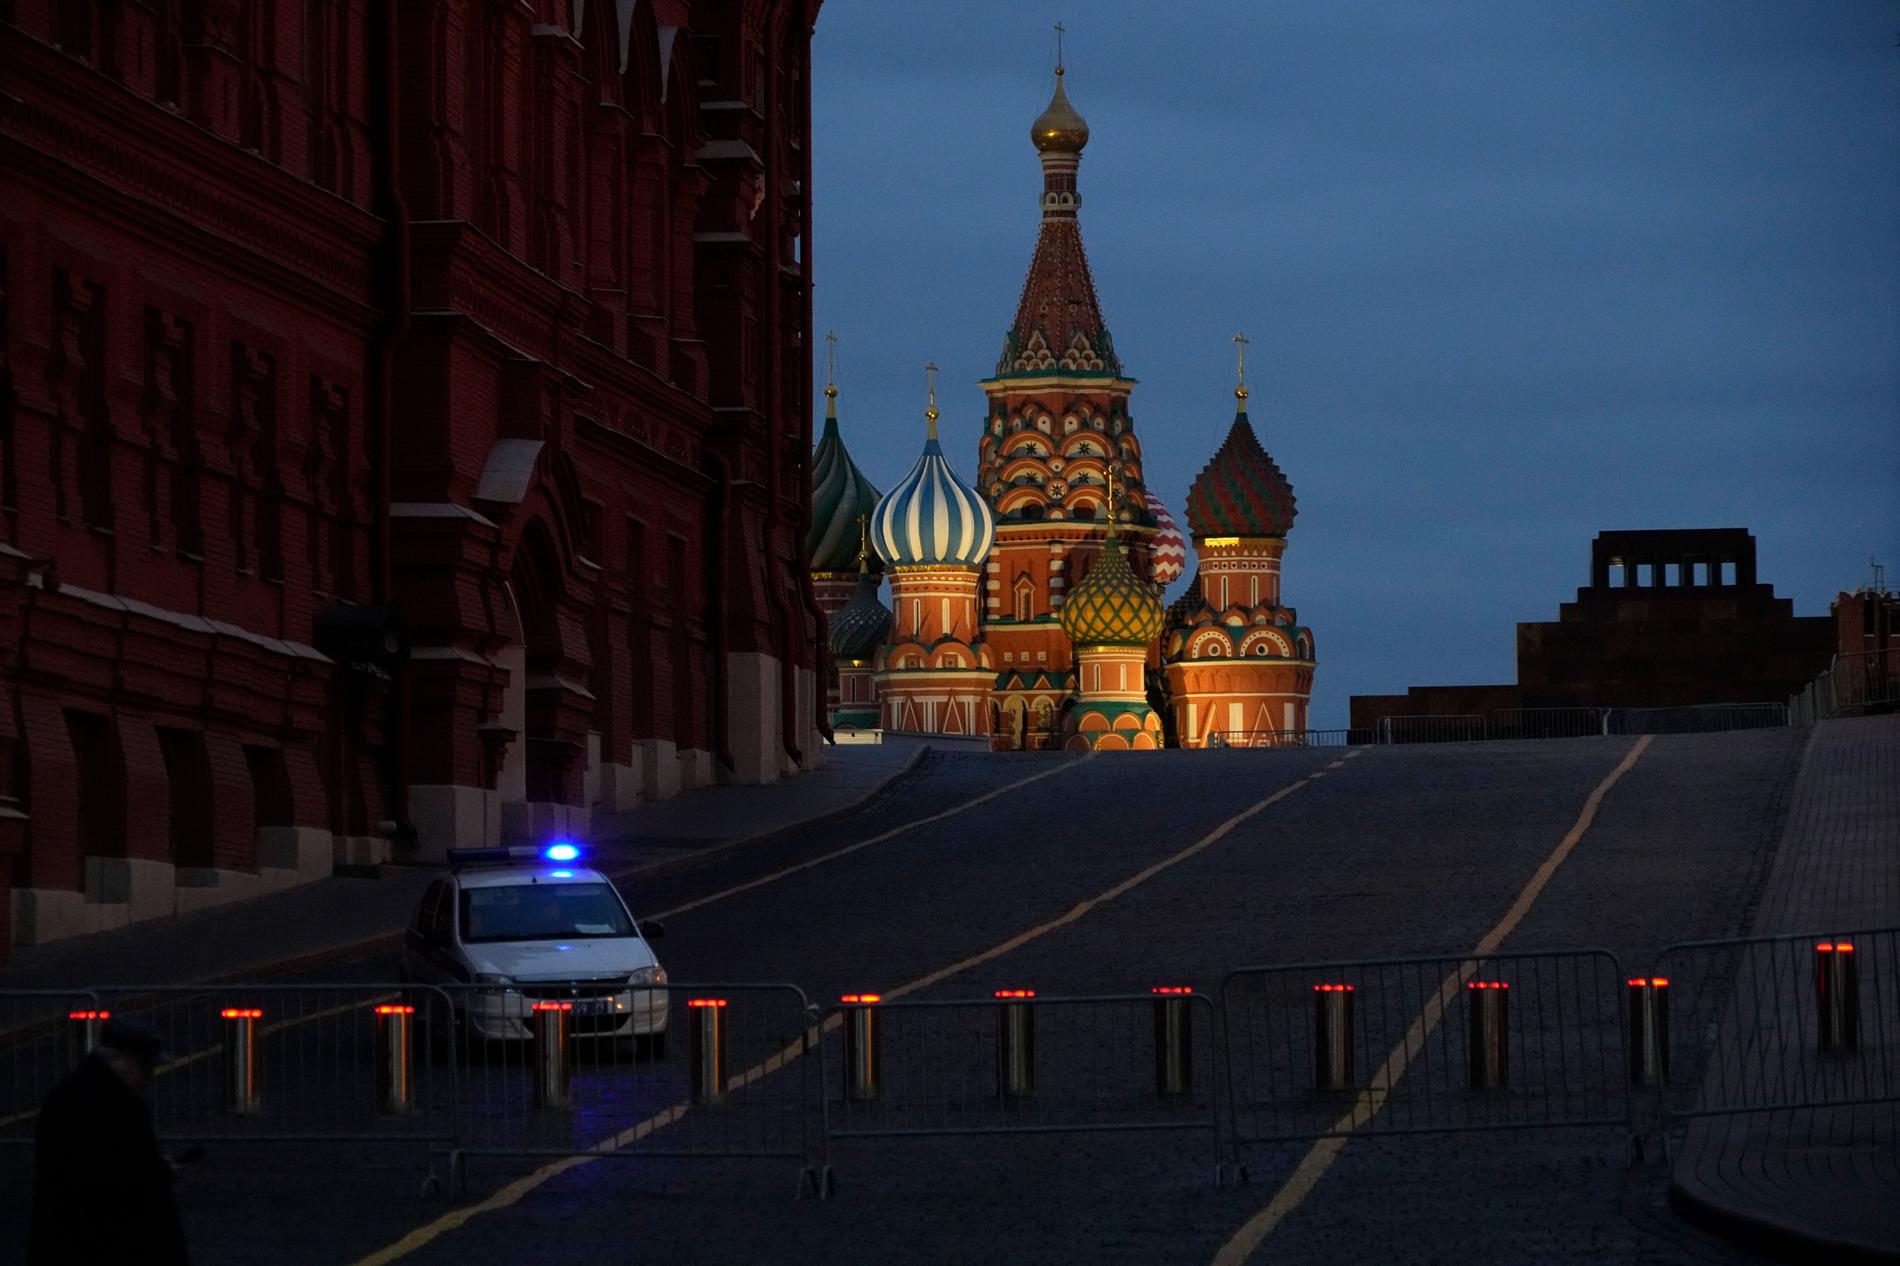 Vasilijkatedralen i Moskva med de välkända lökkupolerna. 